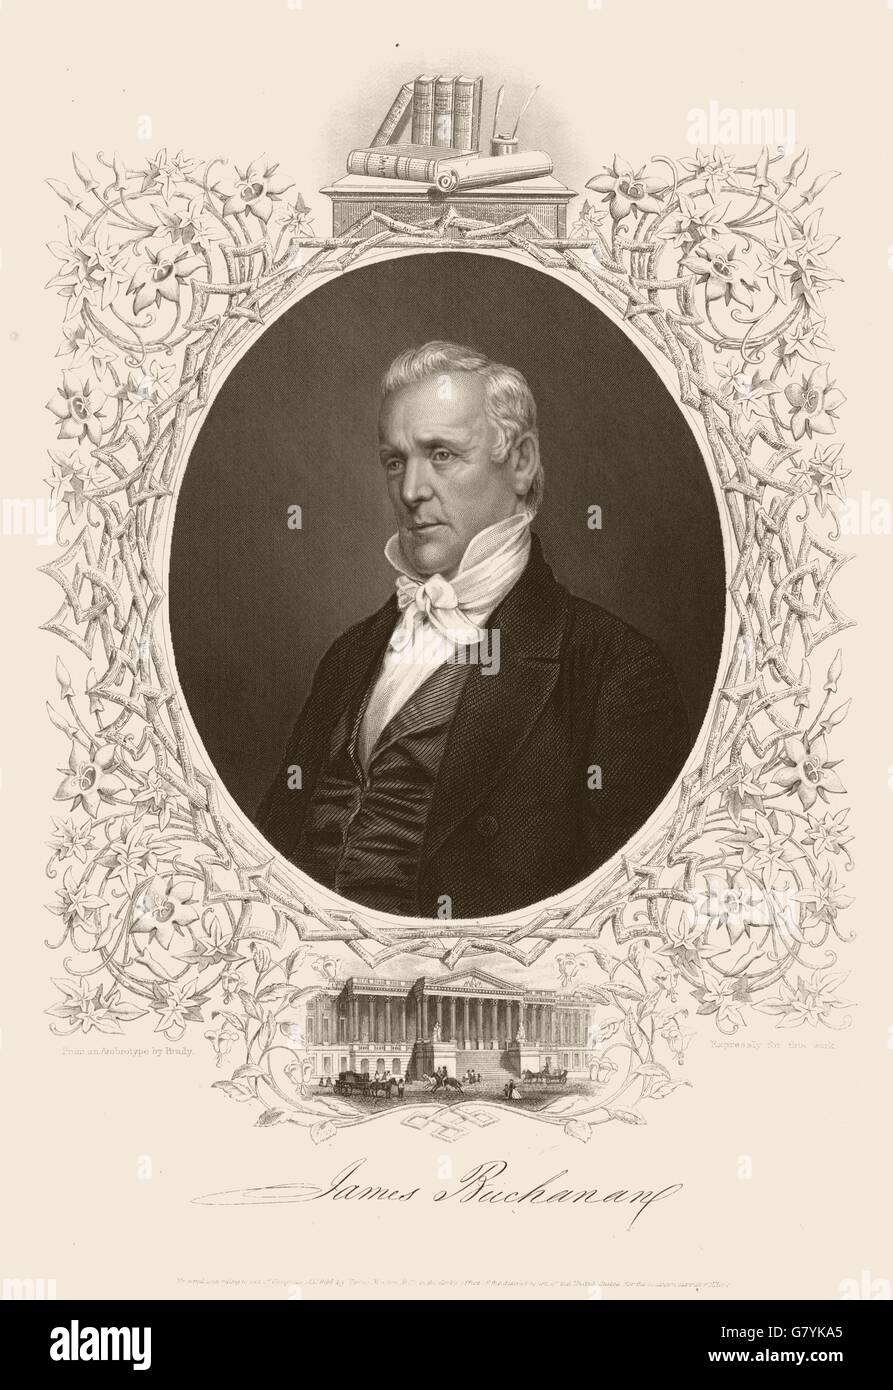 AMERIKANISCHER BÜRGERKRIEG. Porträt von Präsident Buchanan. Politik, alten Drucken 1864 Stockfoto